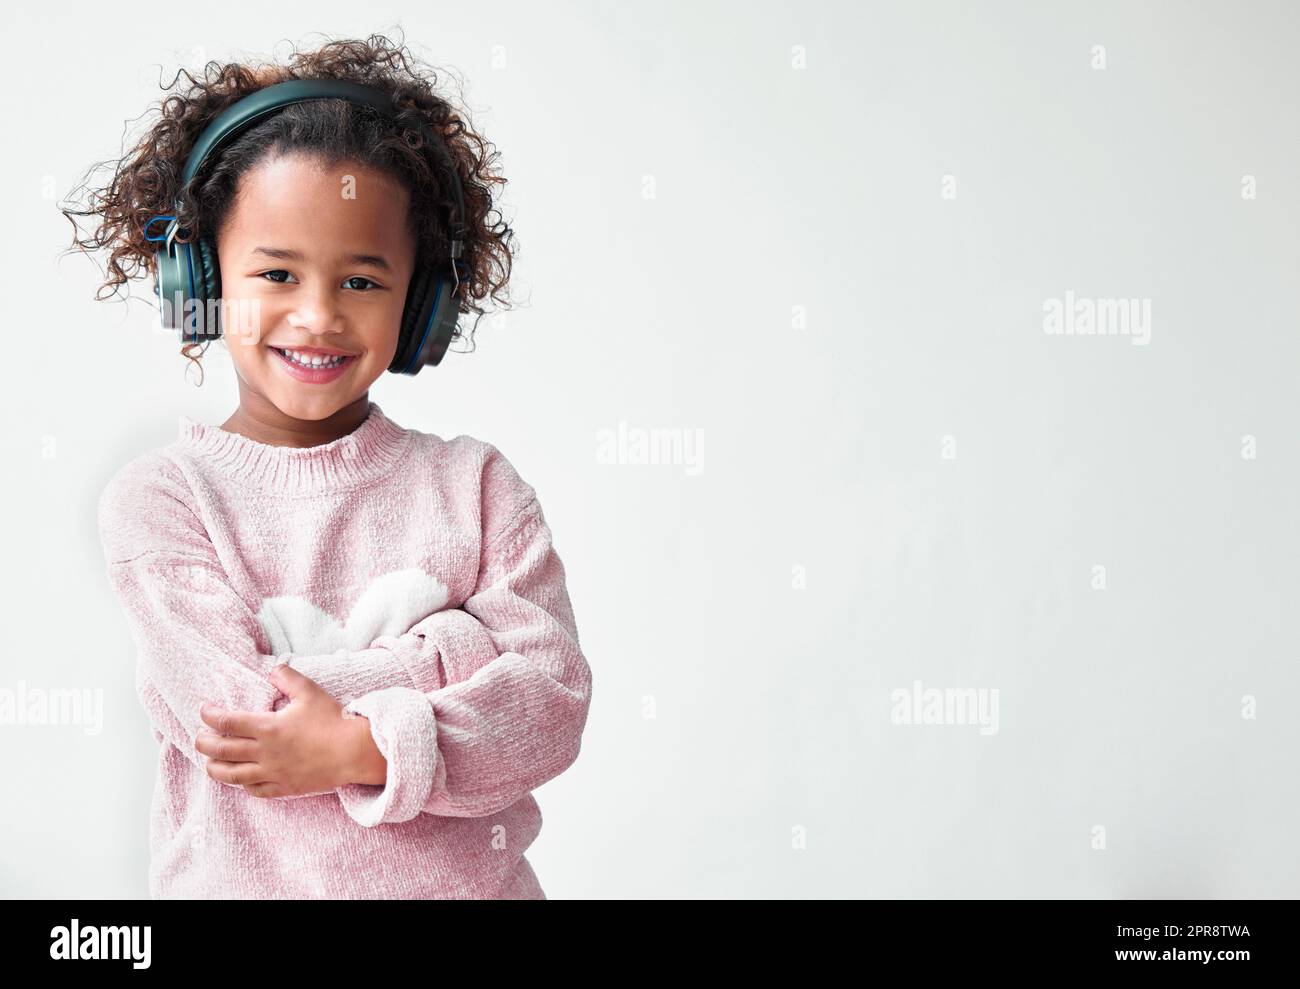 Eine Tochter ist ein Haufen von Aufsehern, die begeistern. Ein kleines Mädchen, das mit gekreuzten Armen vor einem grauen Hintergrund steht. Stockfoto